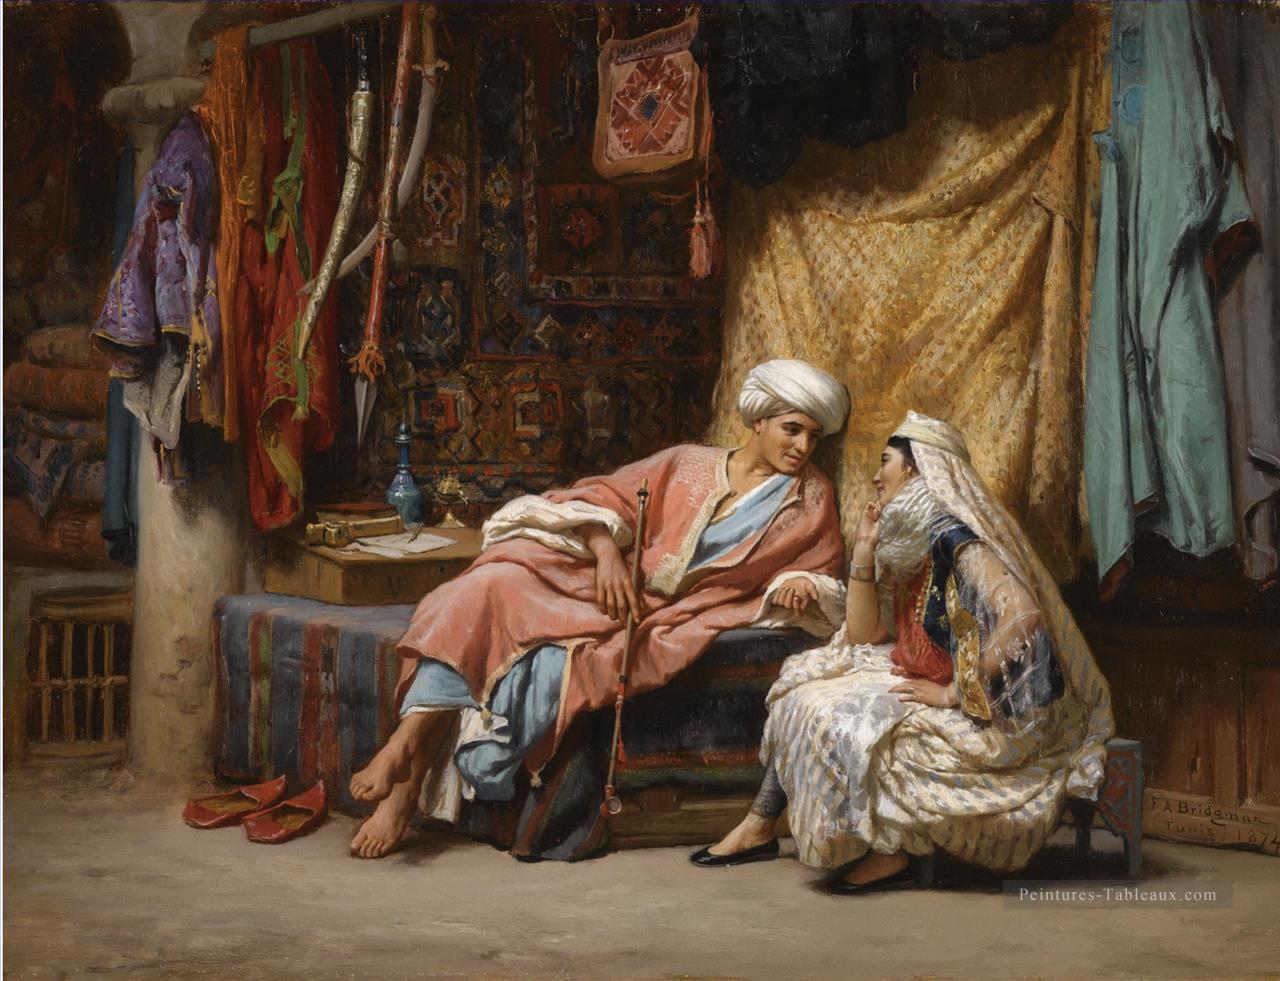 DANS LE TUNIS DE SOUK Frederick Arthur Bridgman Arabe Peintures à l'huile